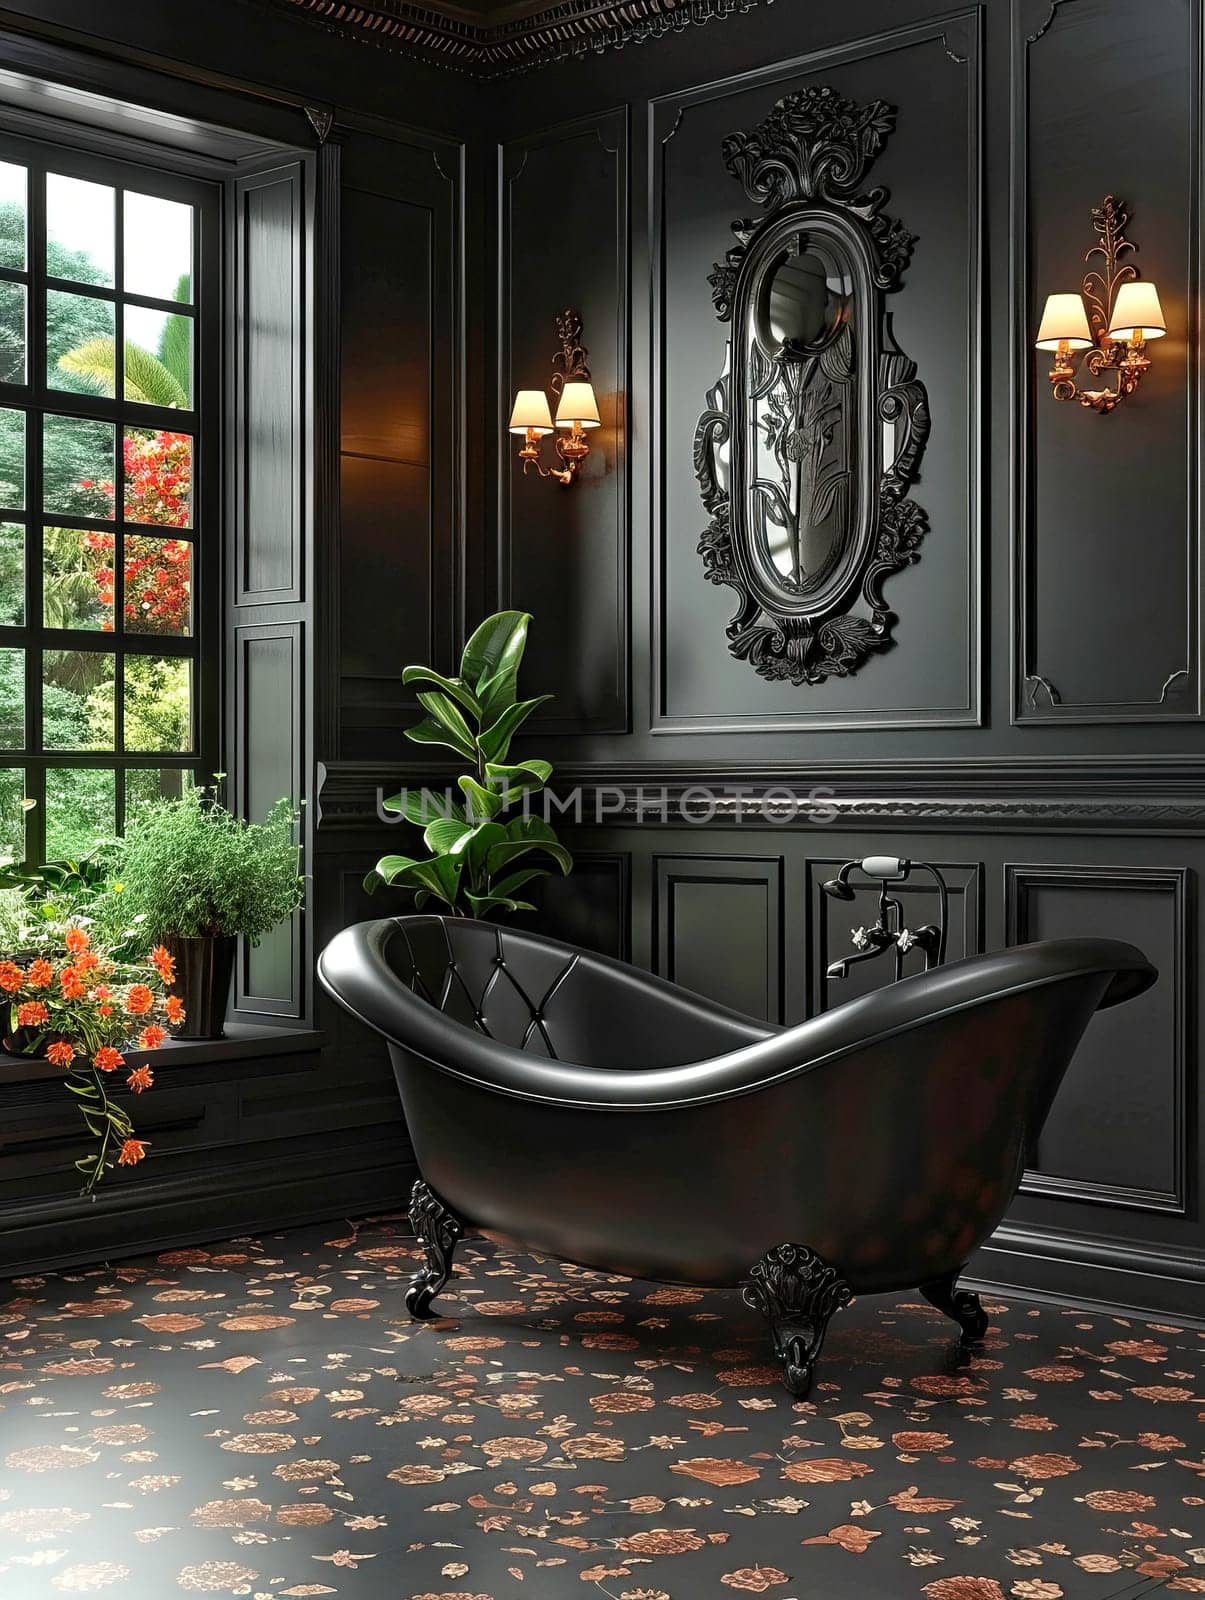 Modern bathroom interior with black walls and black bathtub.